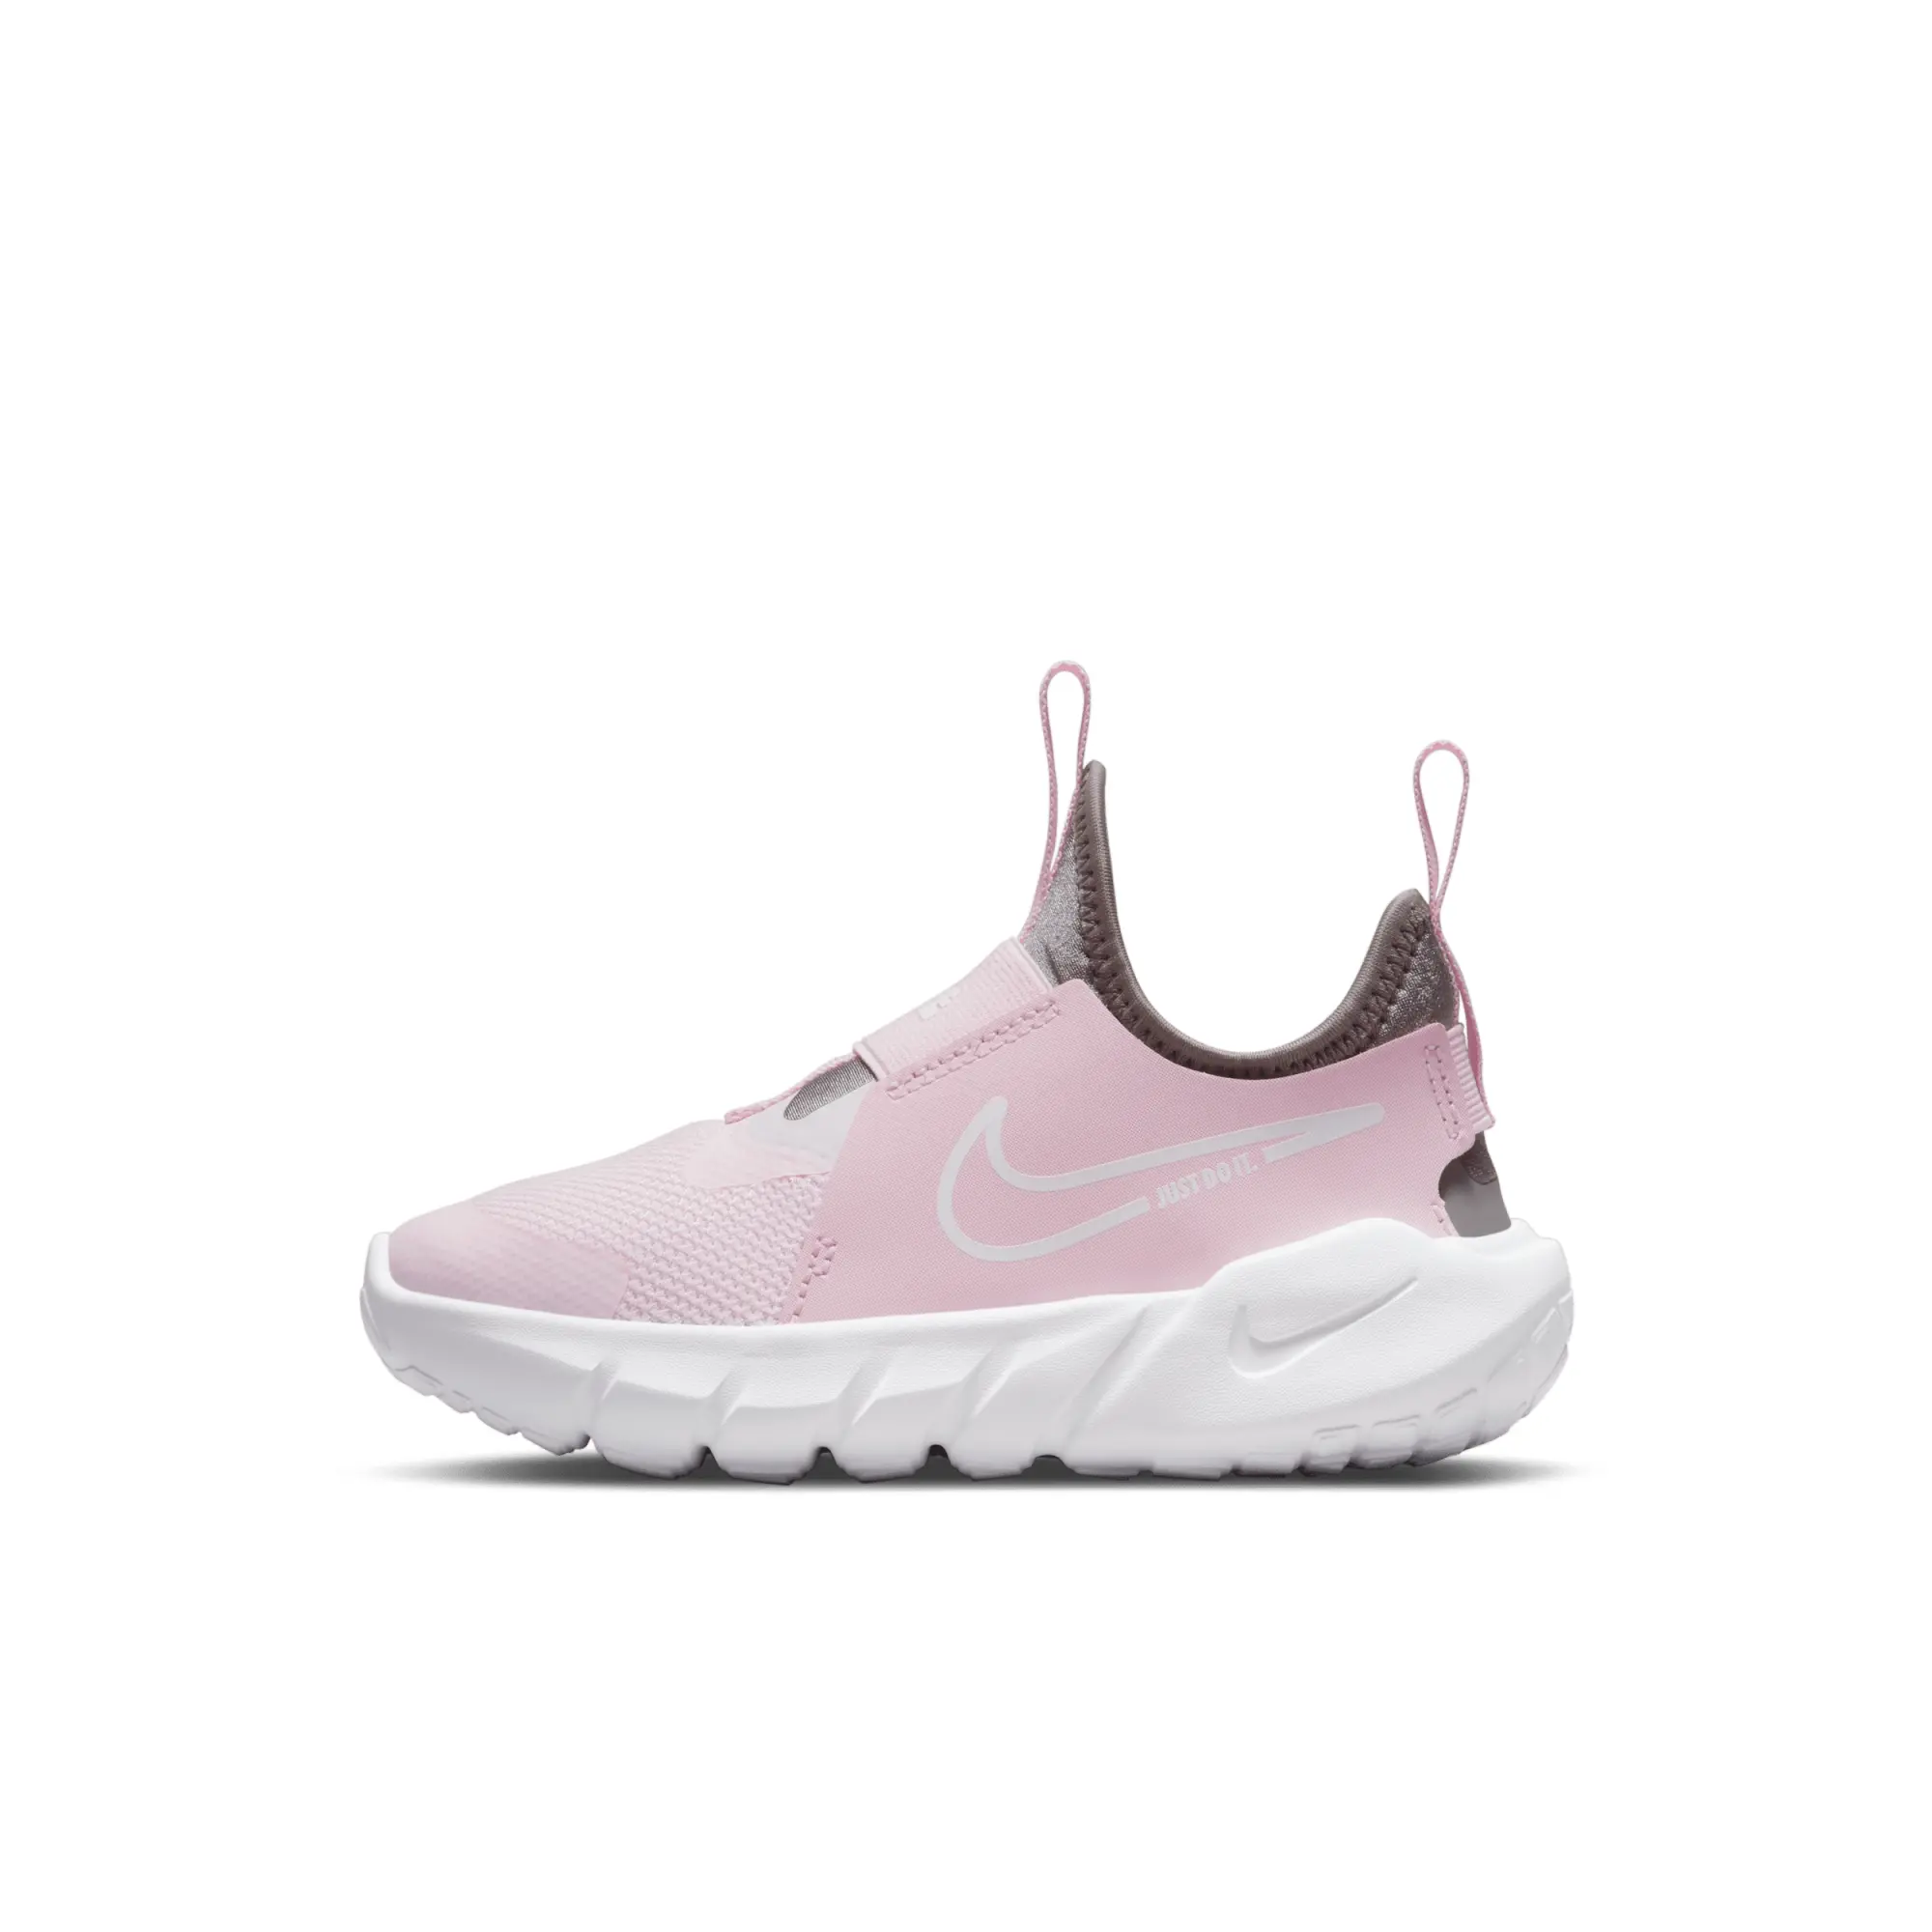 Nike Flex Runner 2, Pink/White